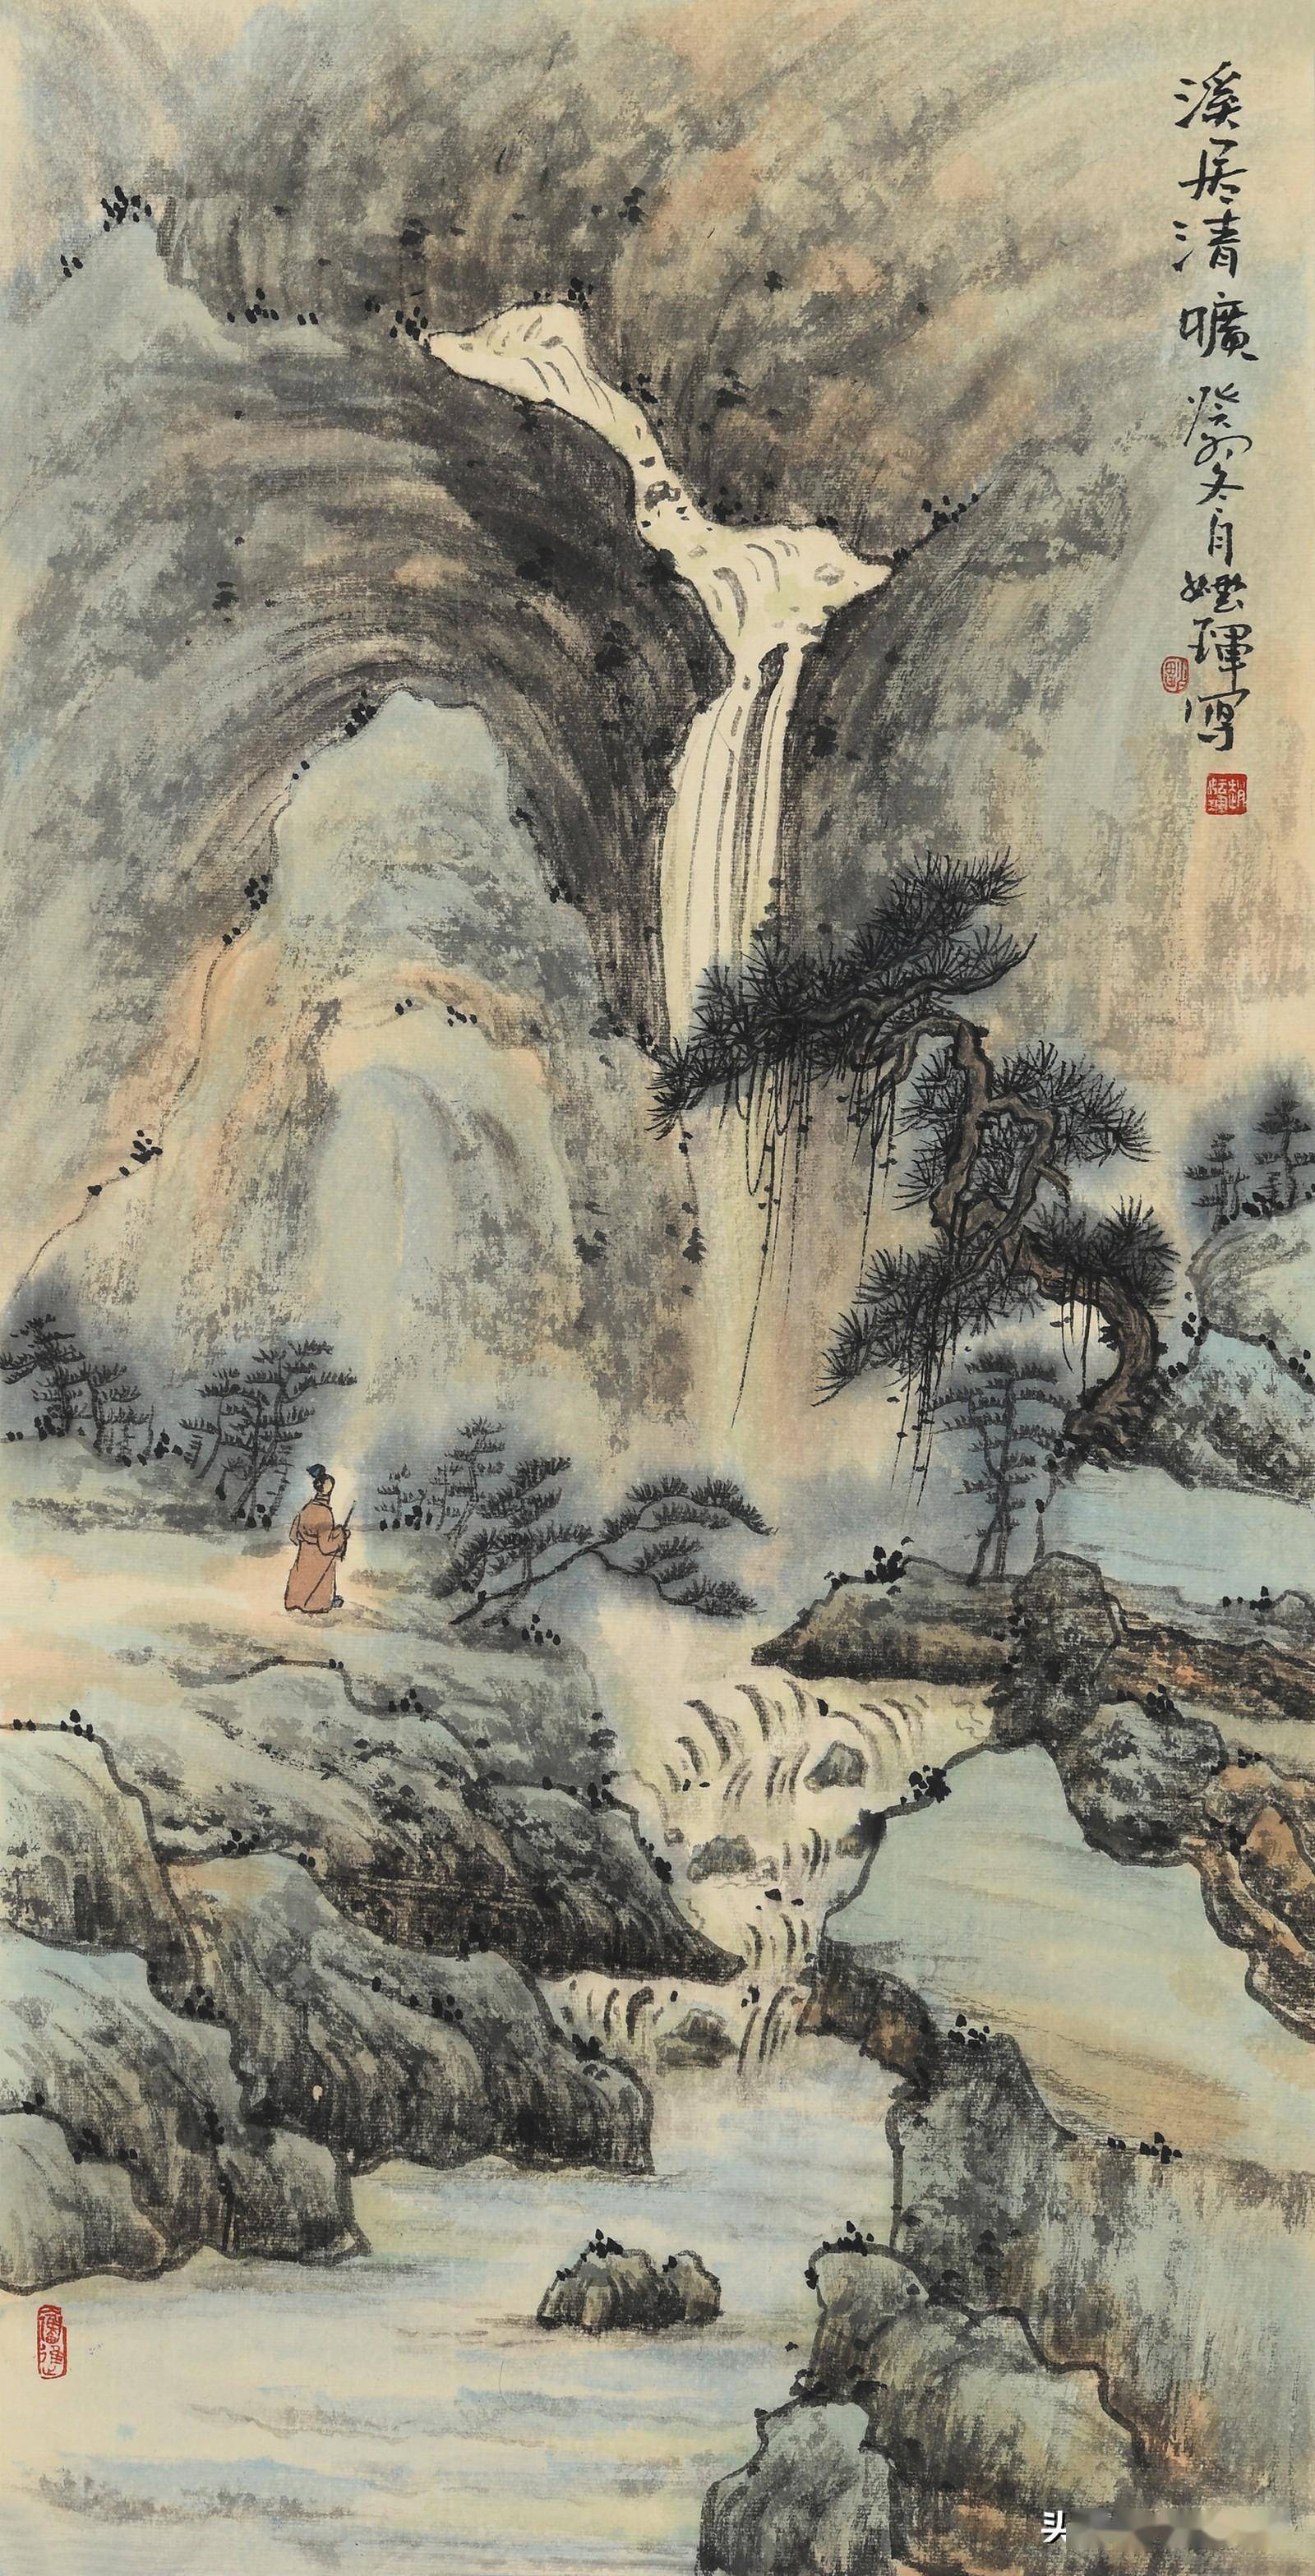 赵风霞(妘珲)山水画,在古意中寻找那一丝宁静